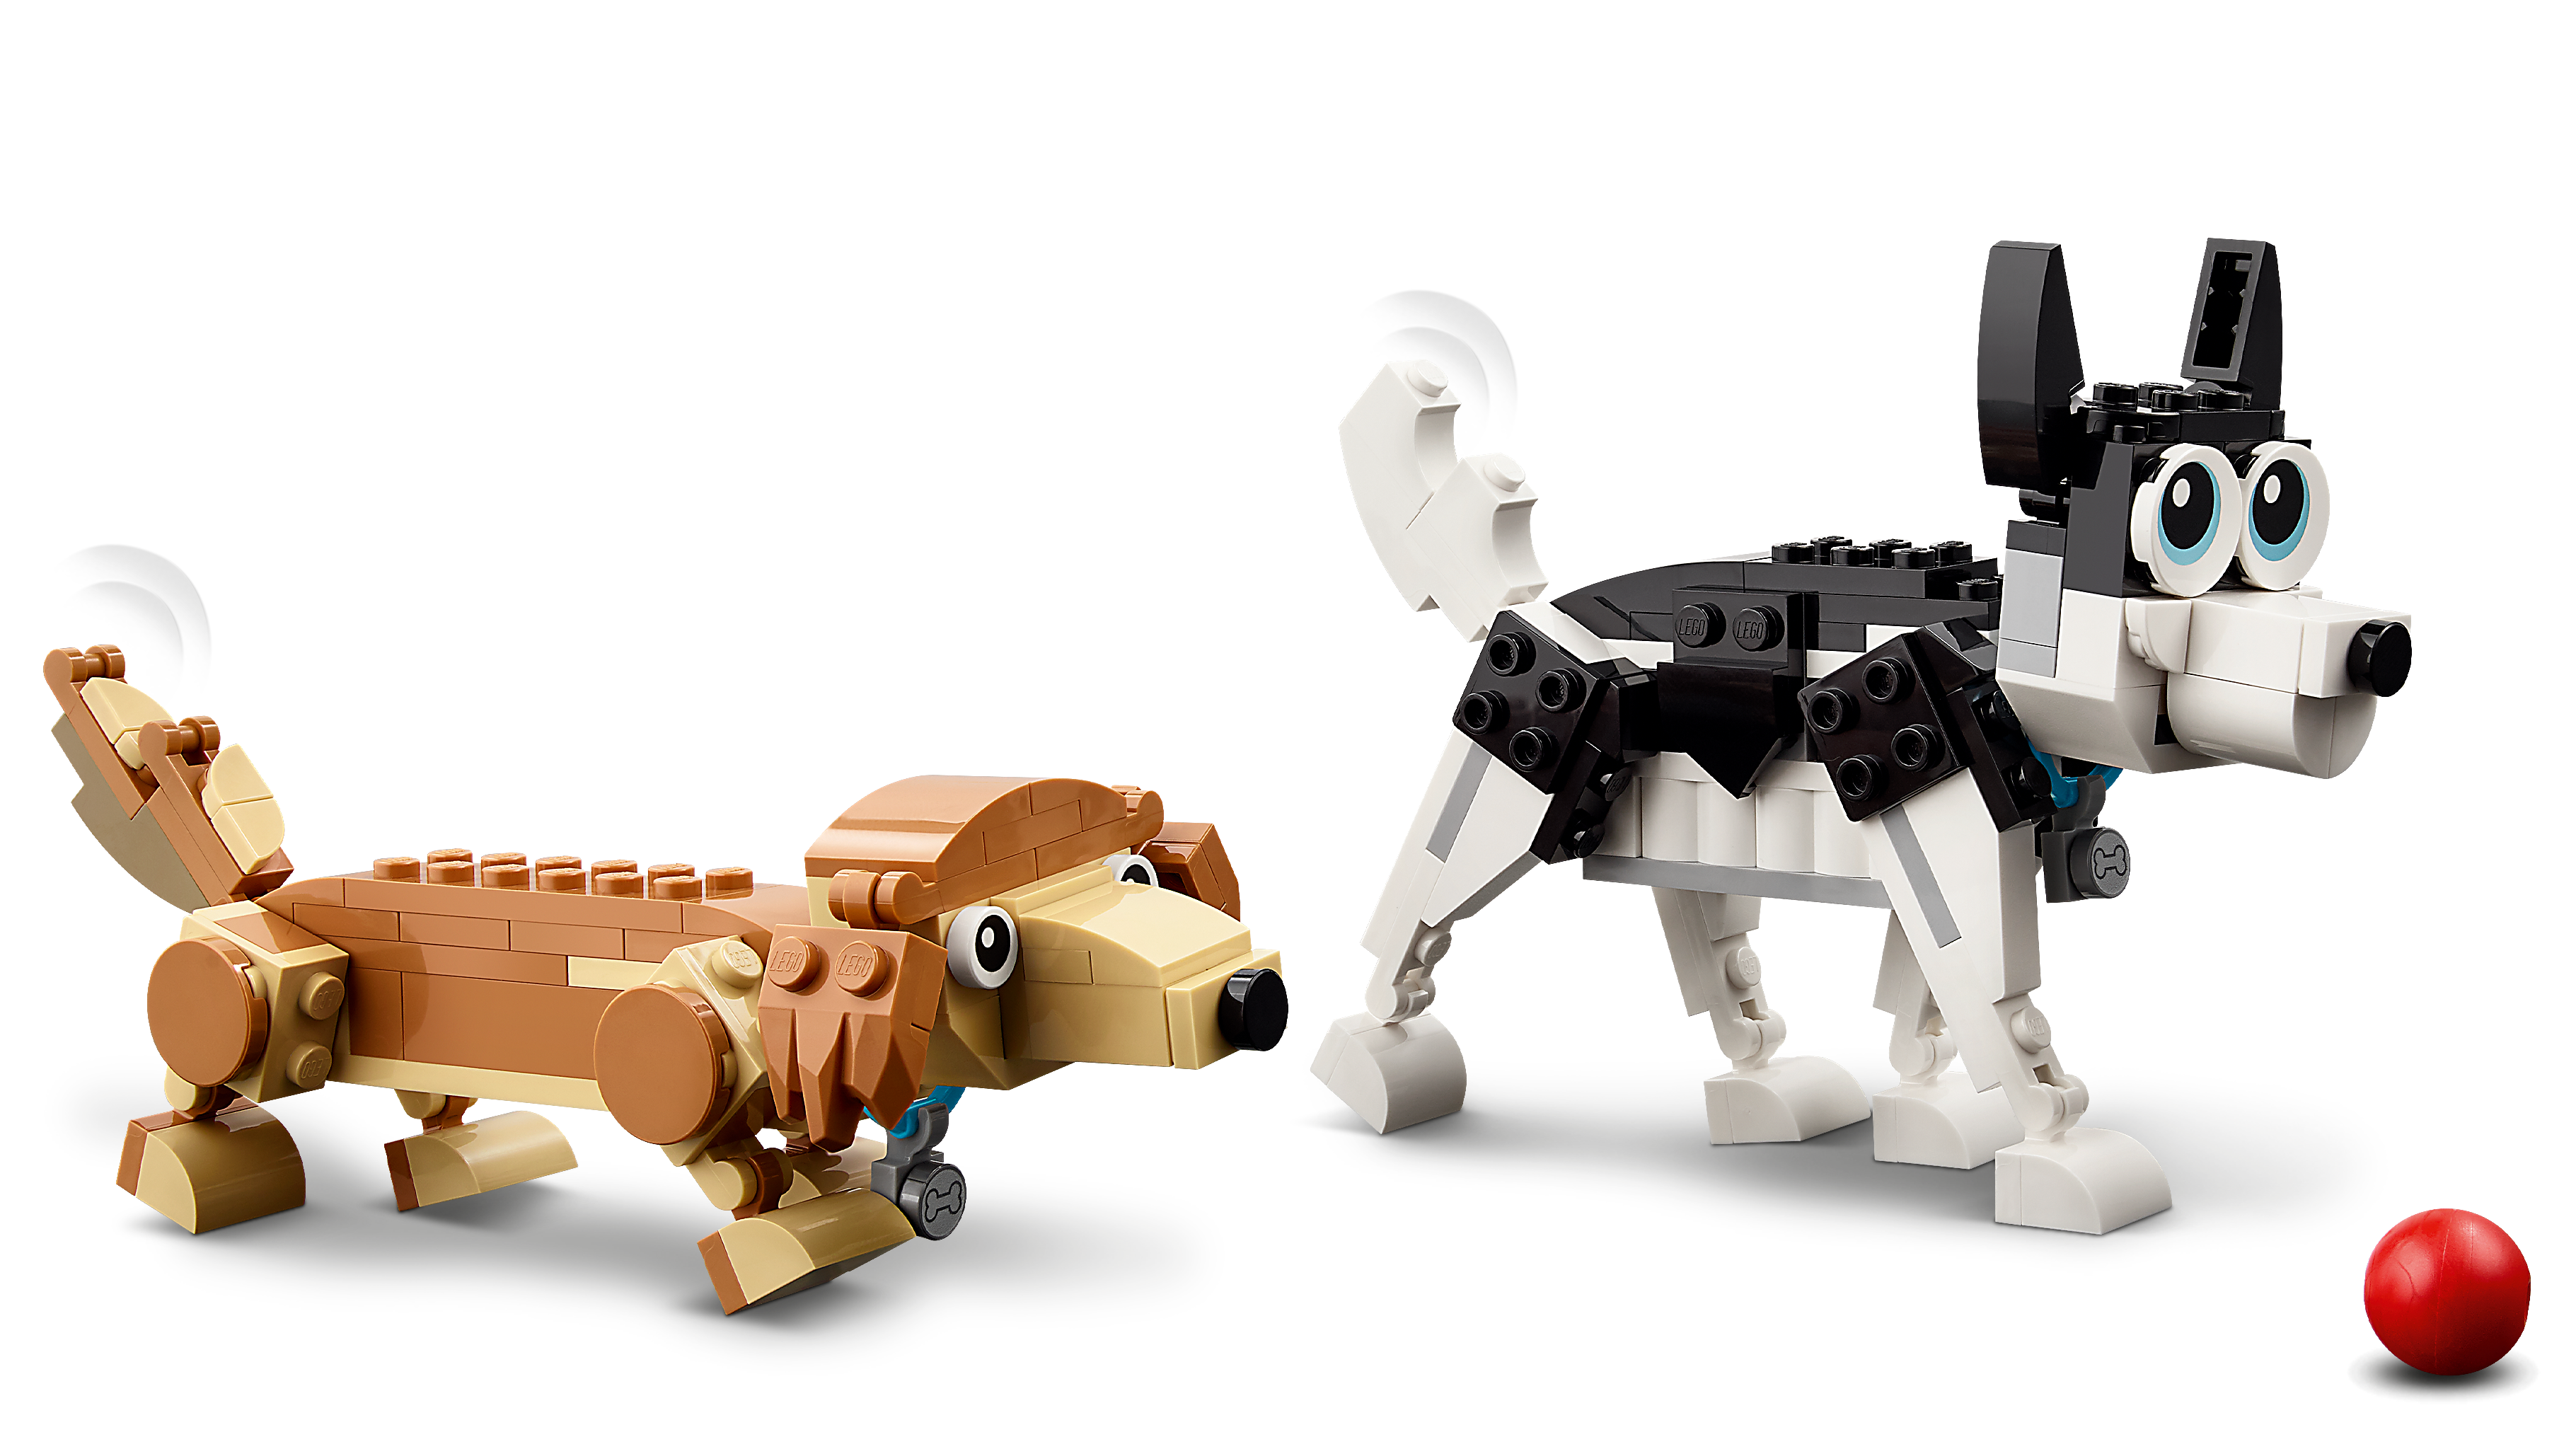 How to Make a Lego Dachshund Dog: Step-by-Step Tutorial - Lego MOC 